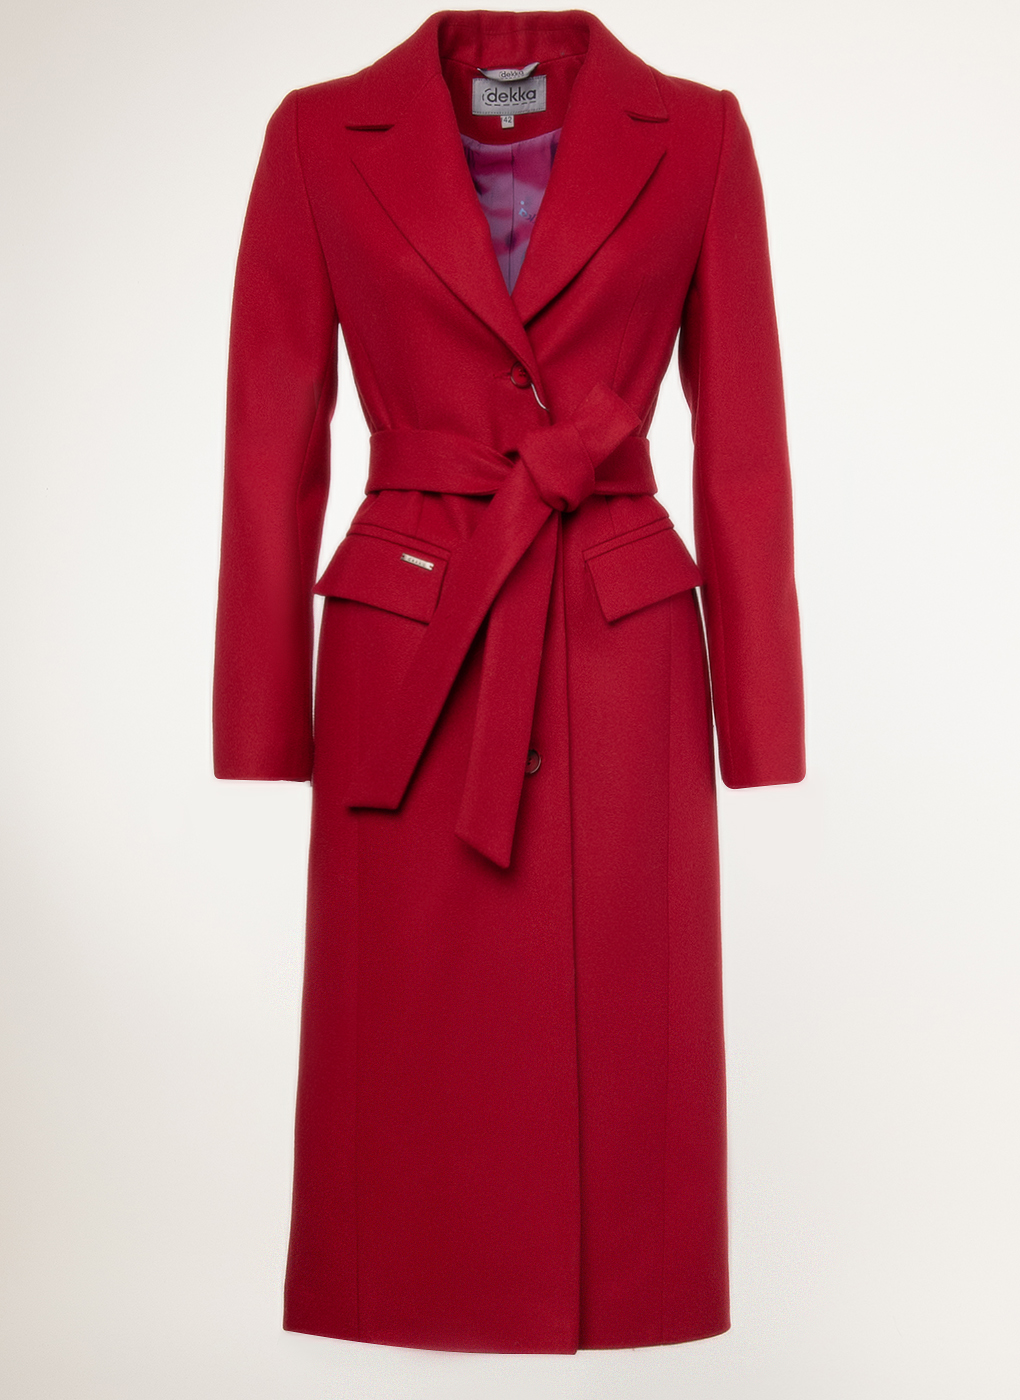 Пальто женское idekka 45075 красное 42 RU